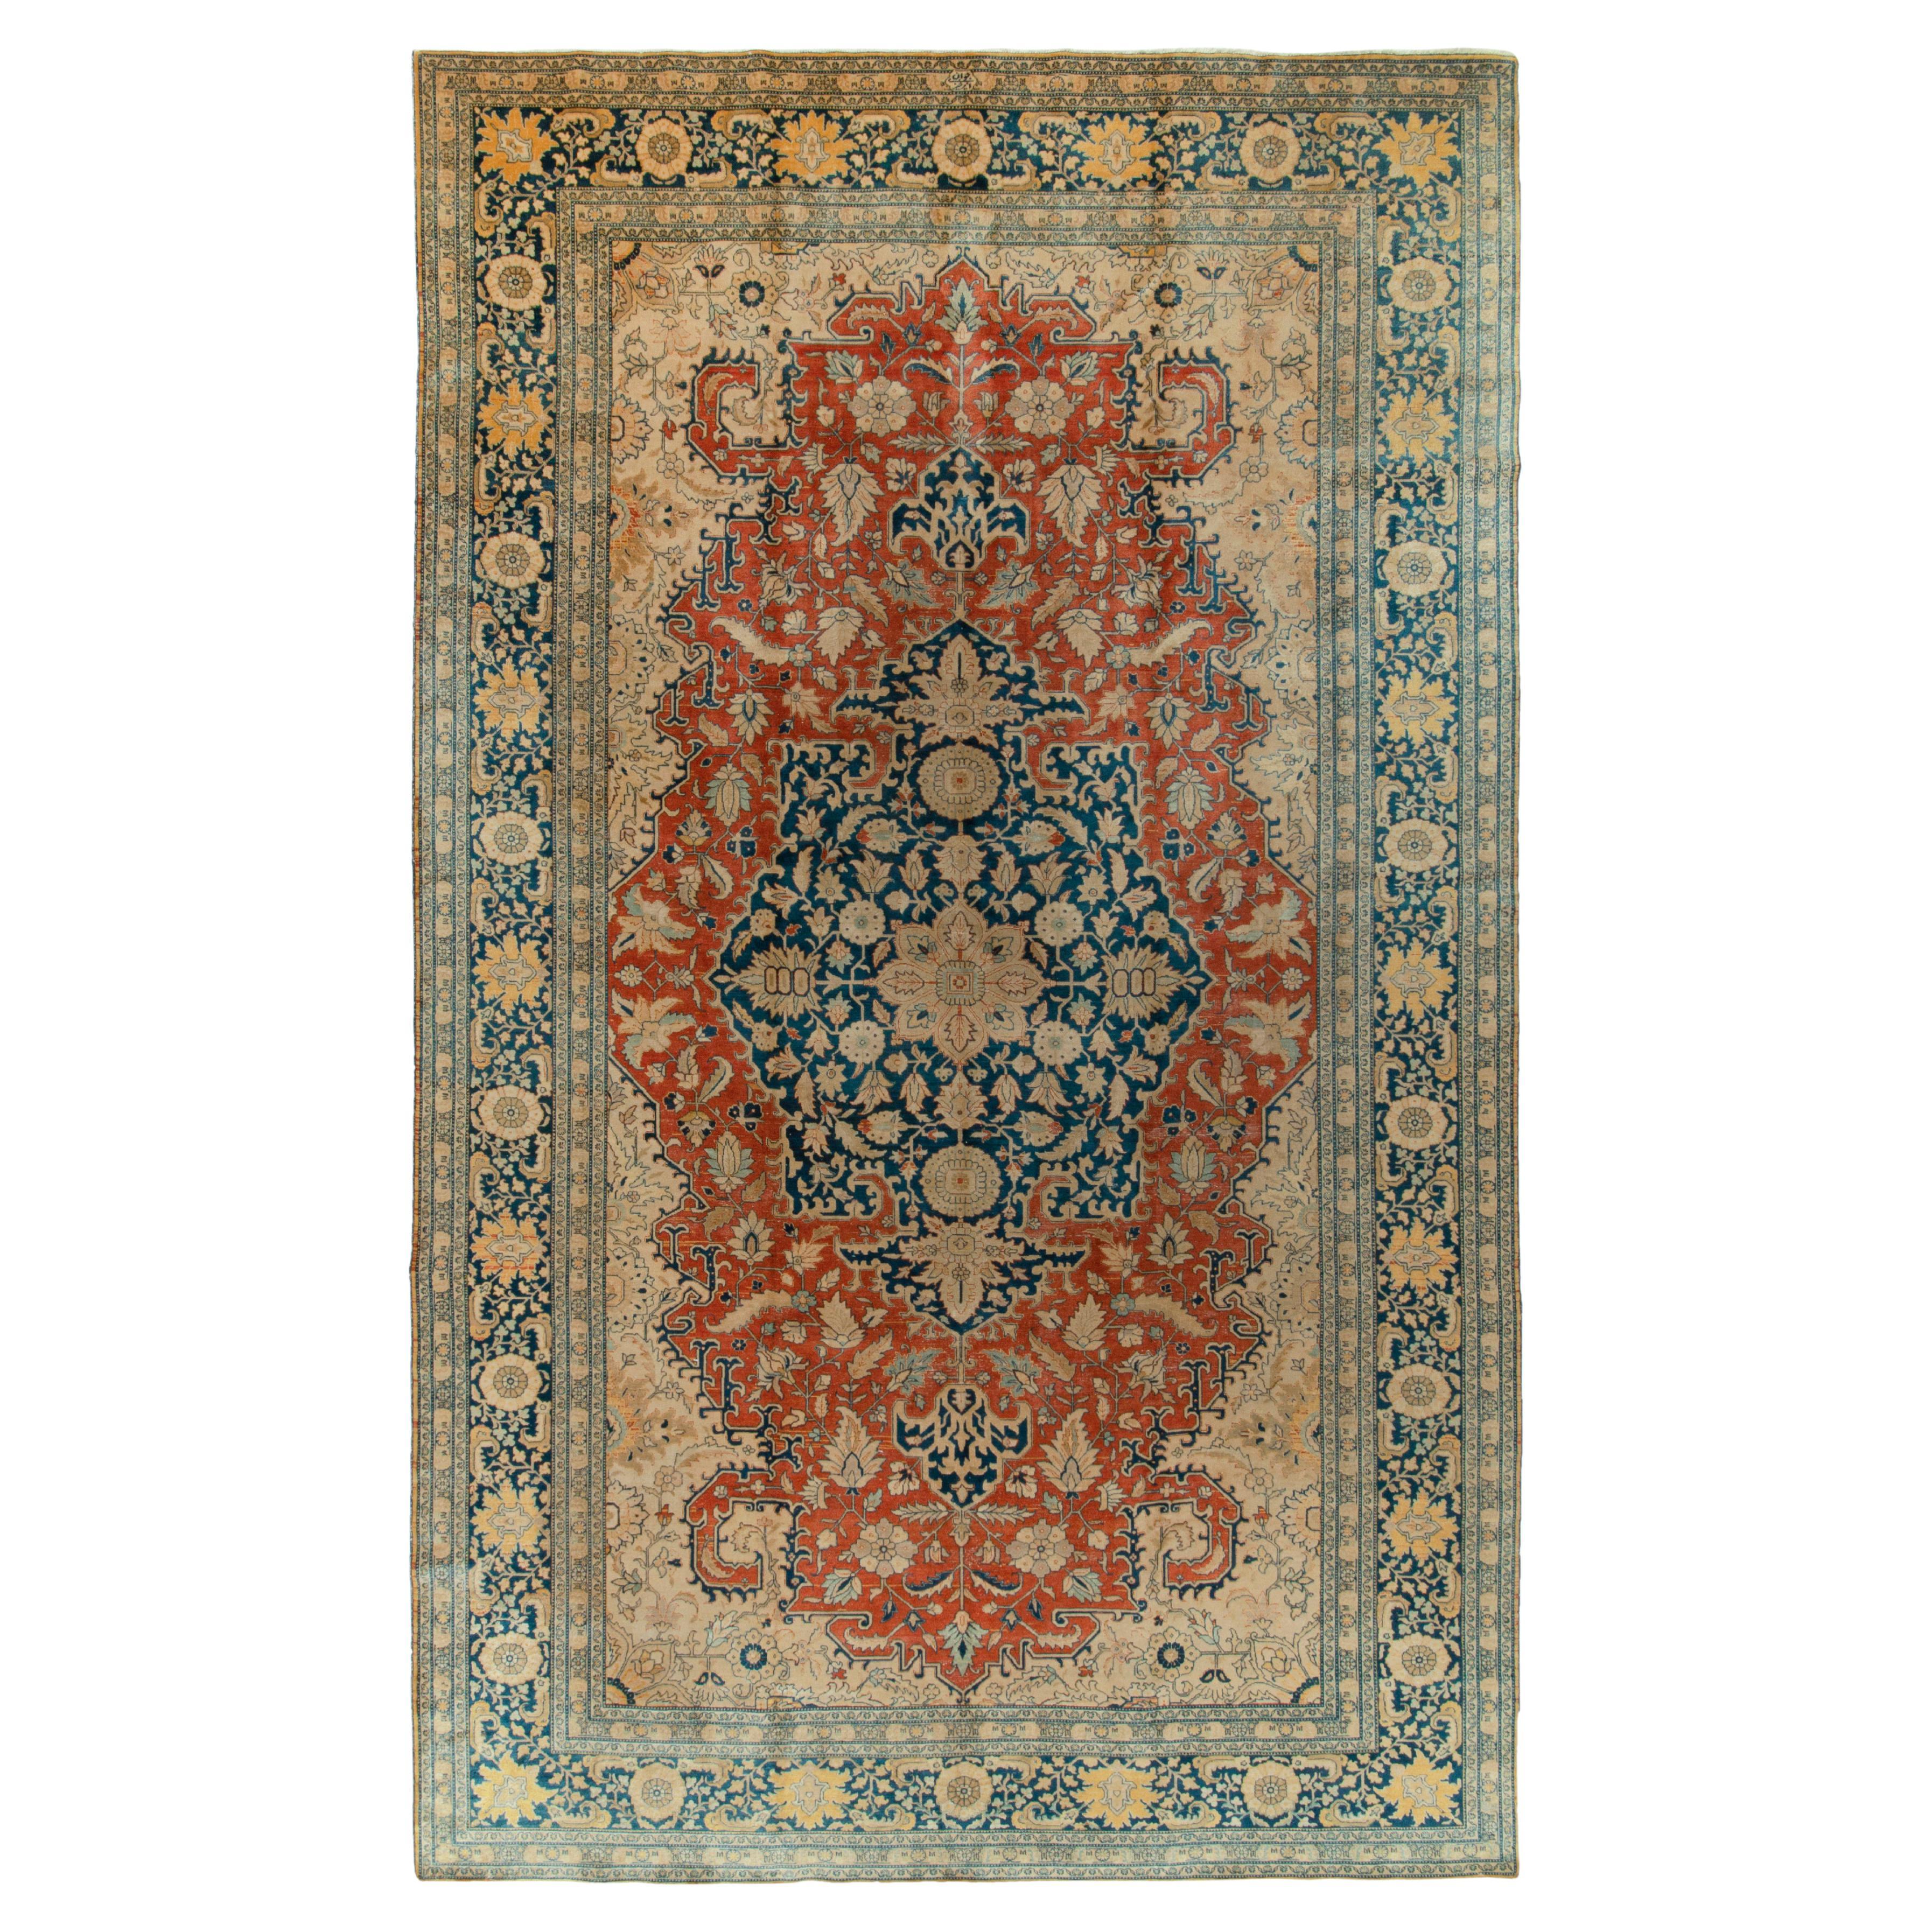 Antique Tabriz rug in Orange Blue, Beige Floral Medallion Pattern by Rug & Kilim For Sale